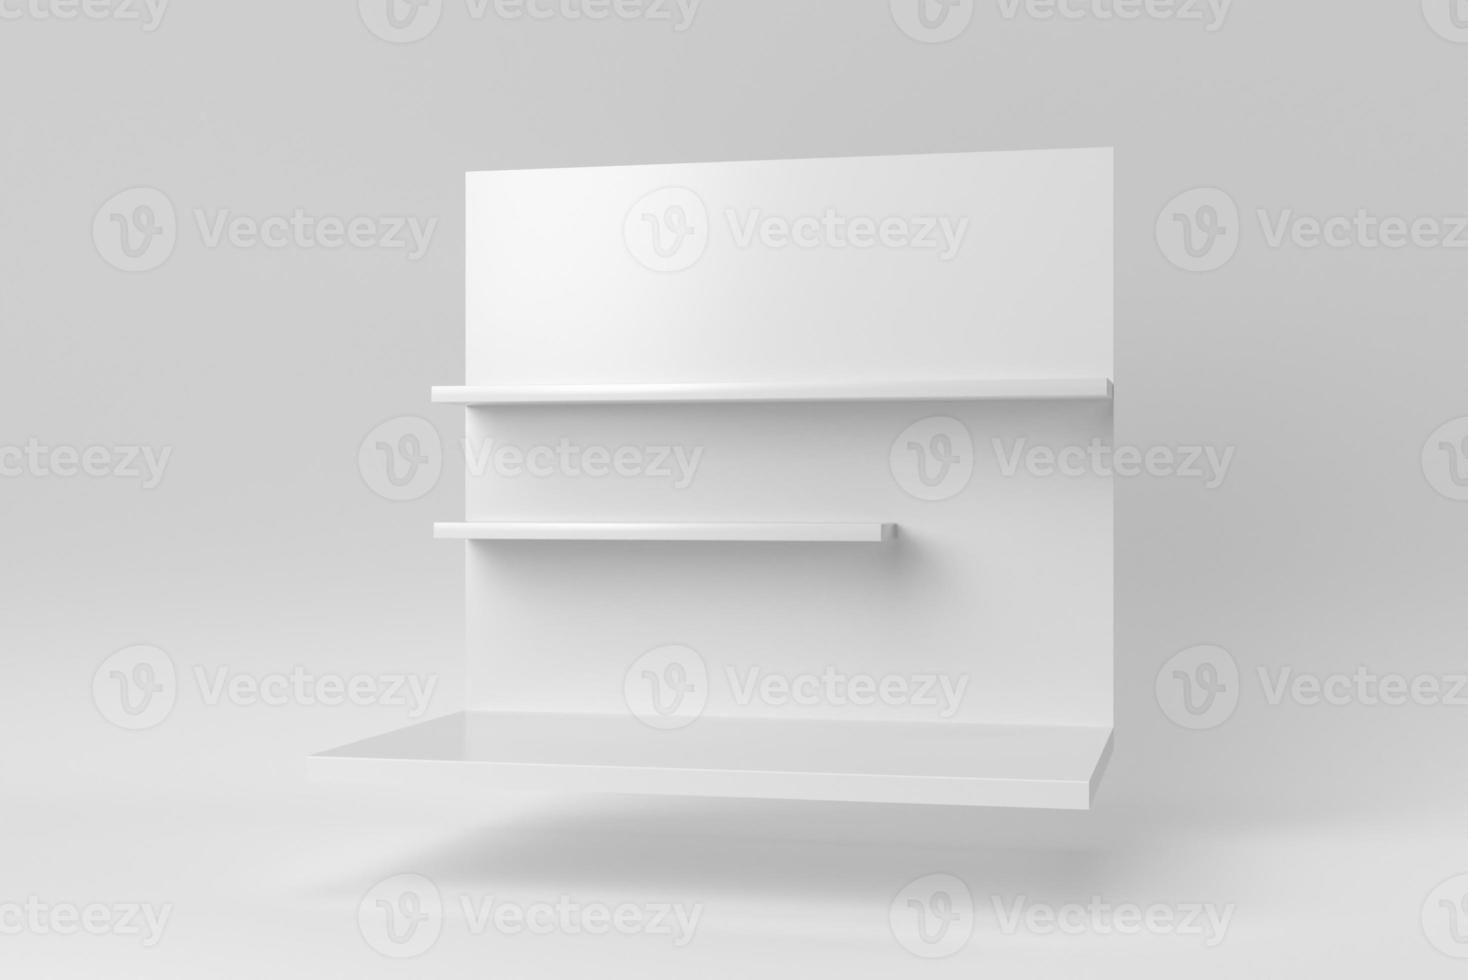 estante de pared sobre fondo blanco. plantilla de diseño, maqueta. procesamiento 3d foto